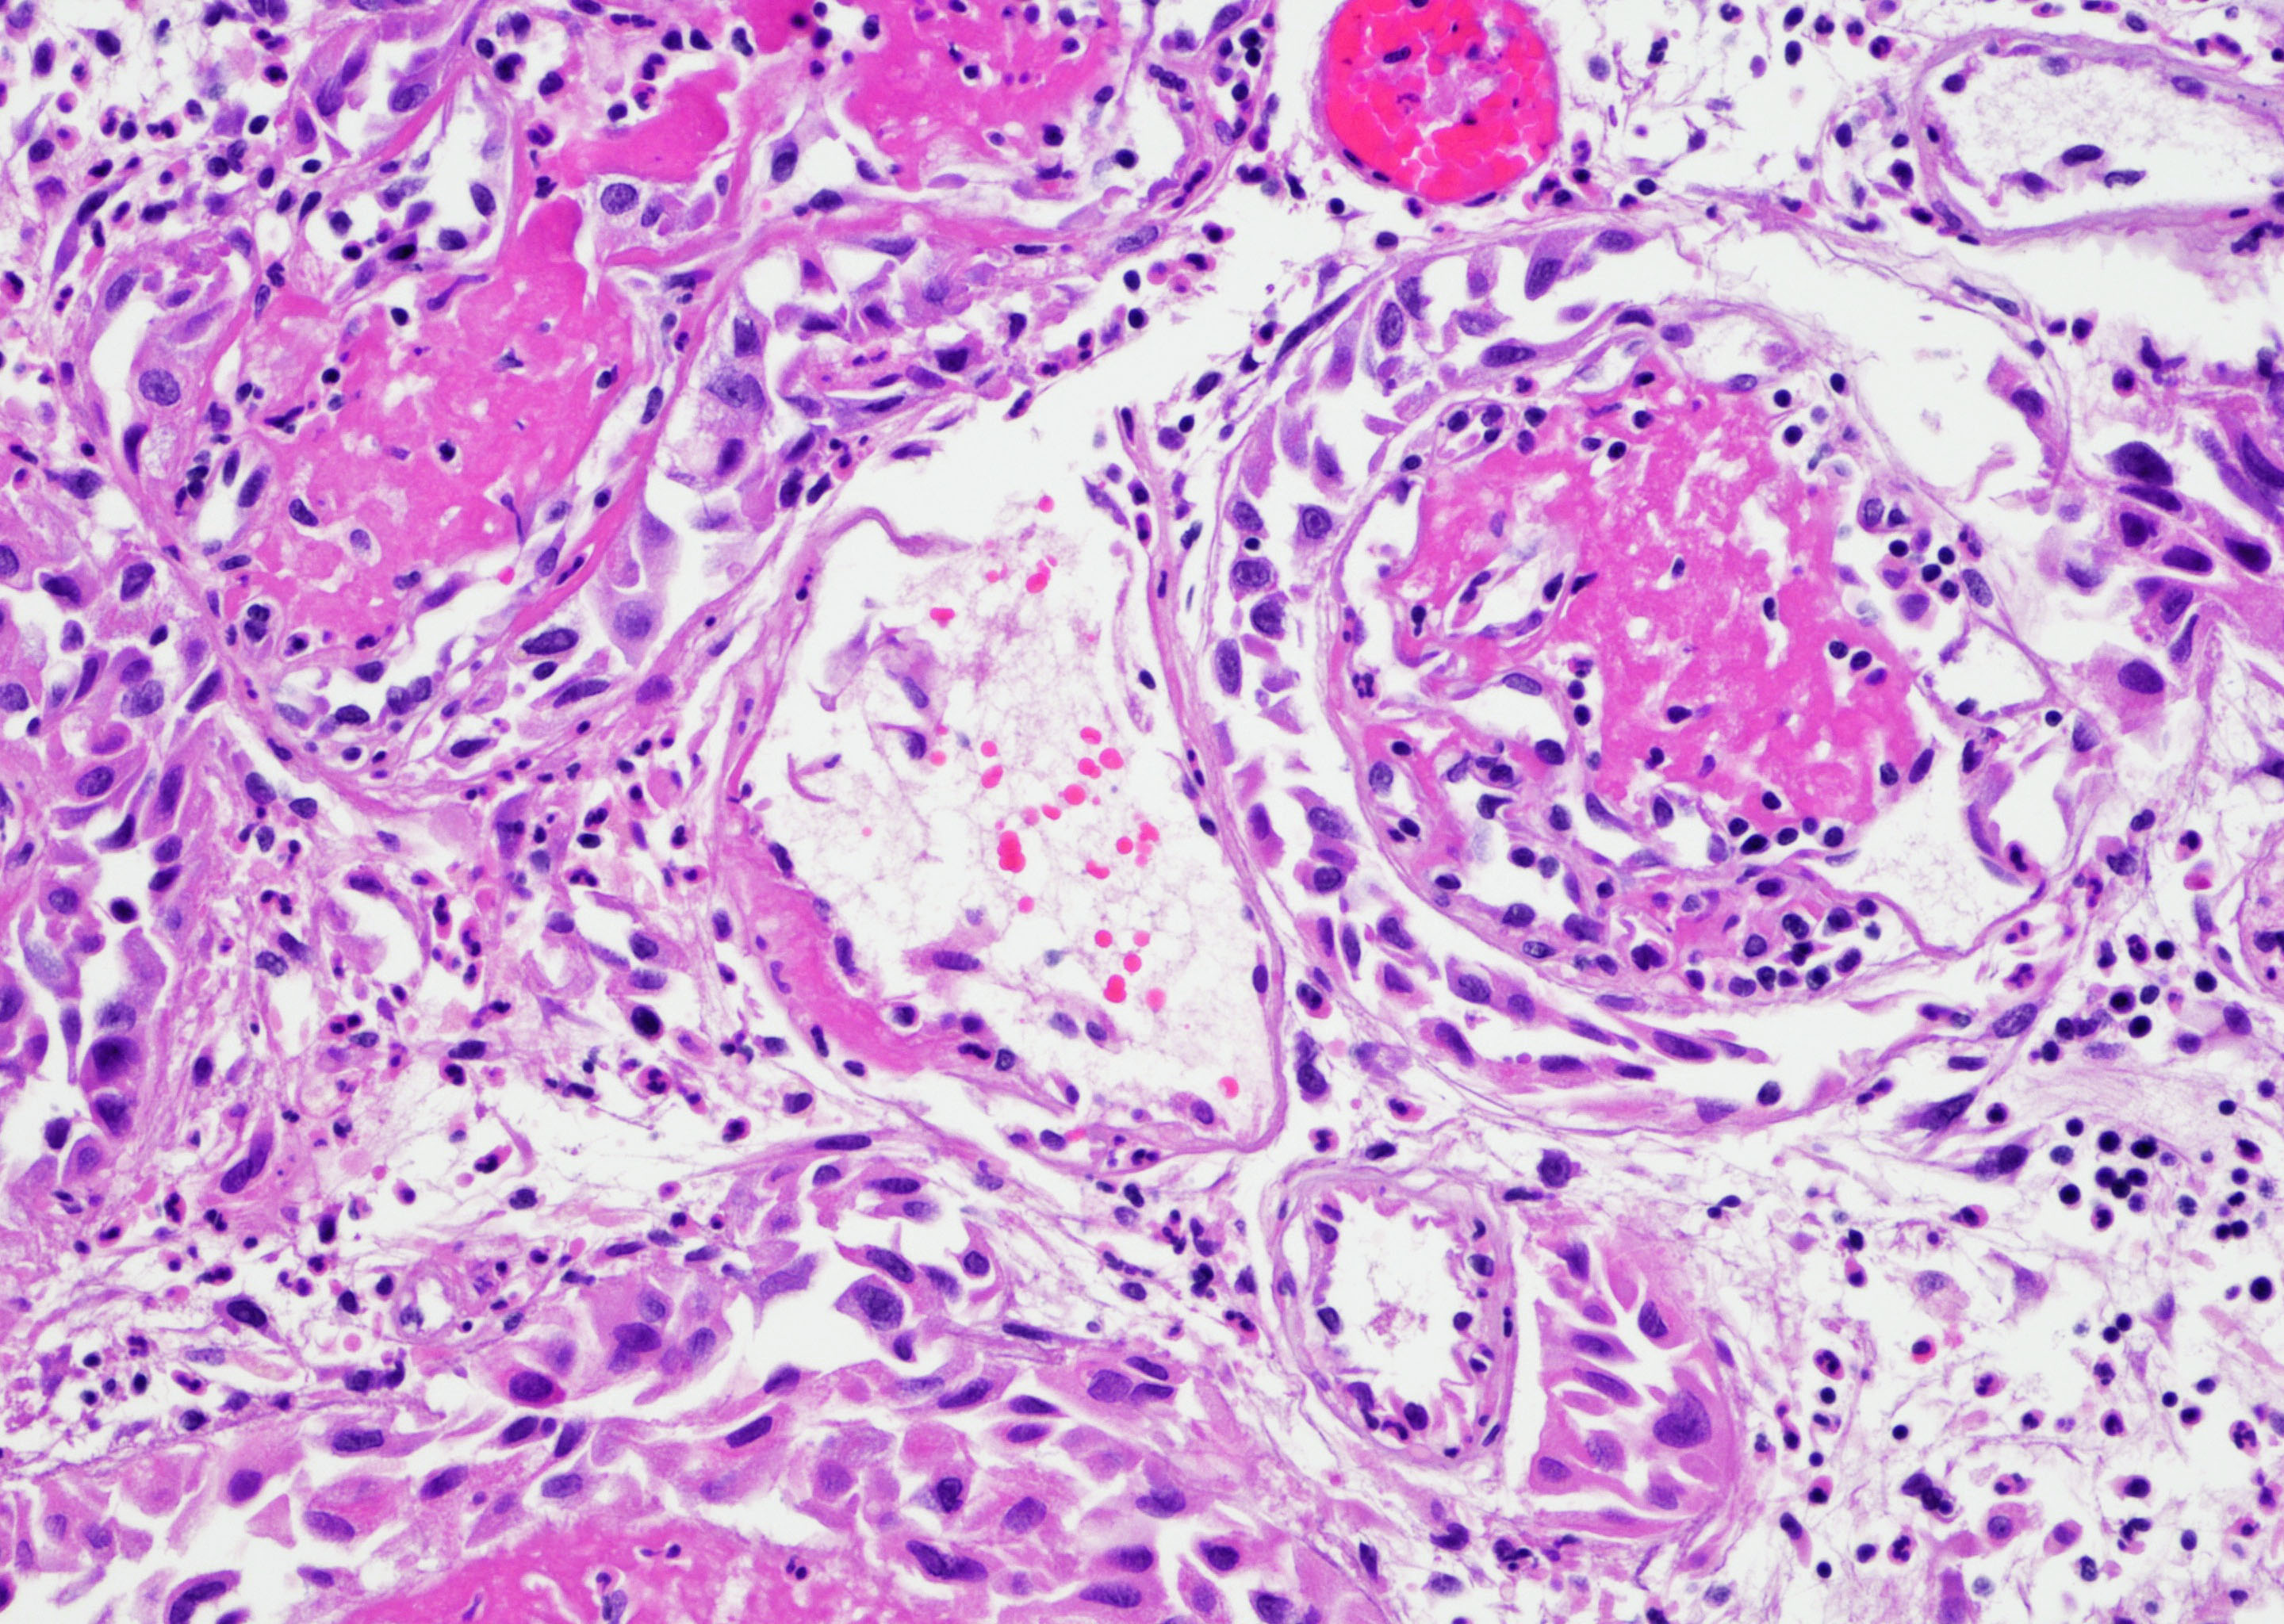 Fibrinoid vascular necrosis